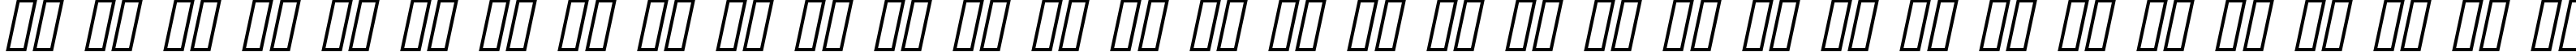 Пример написания русского алфавита шрифтом Pecot Oblique